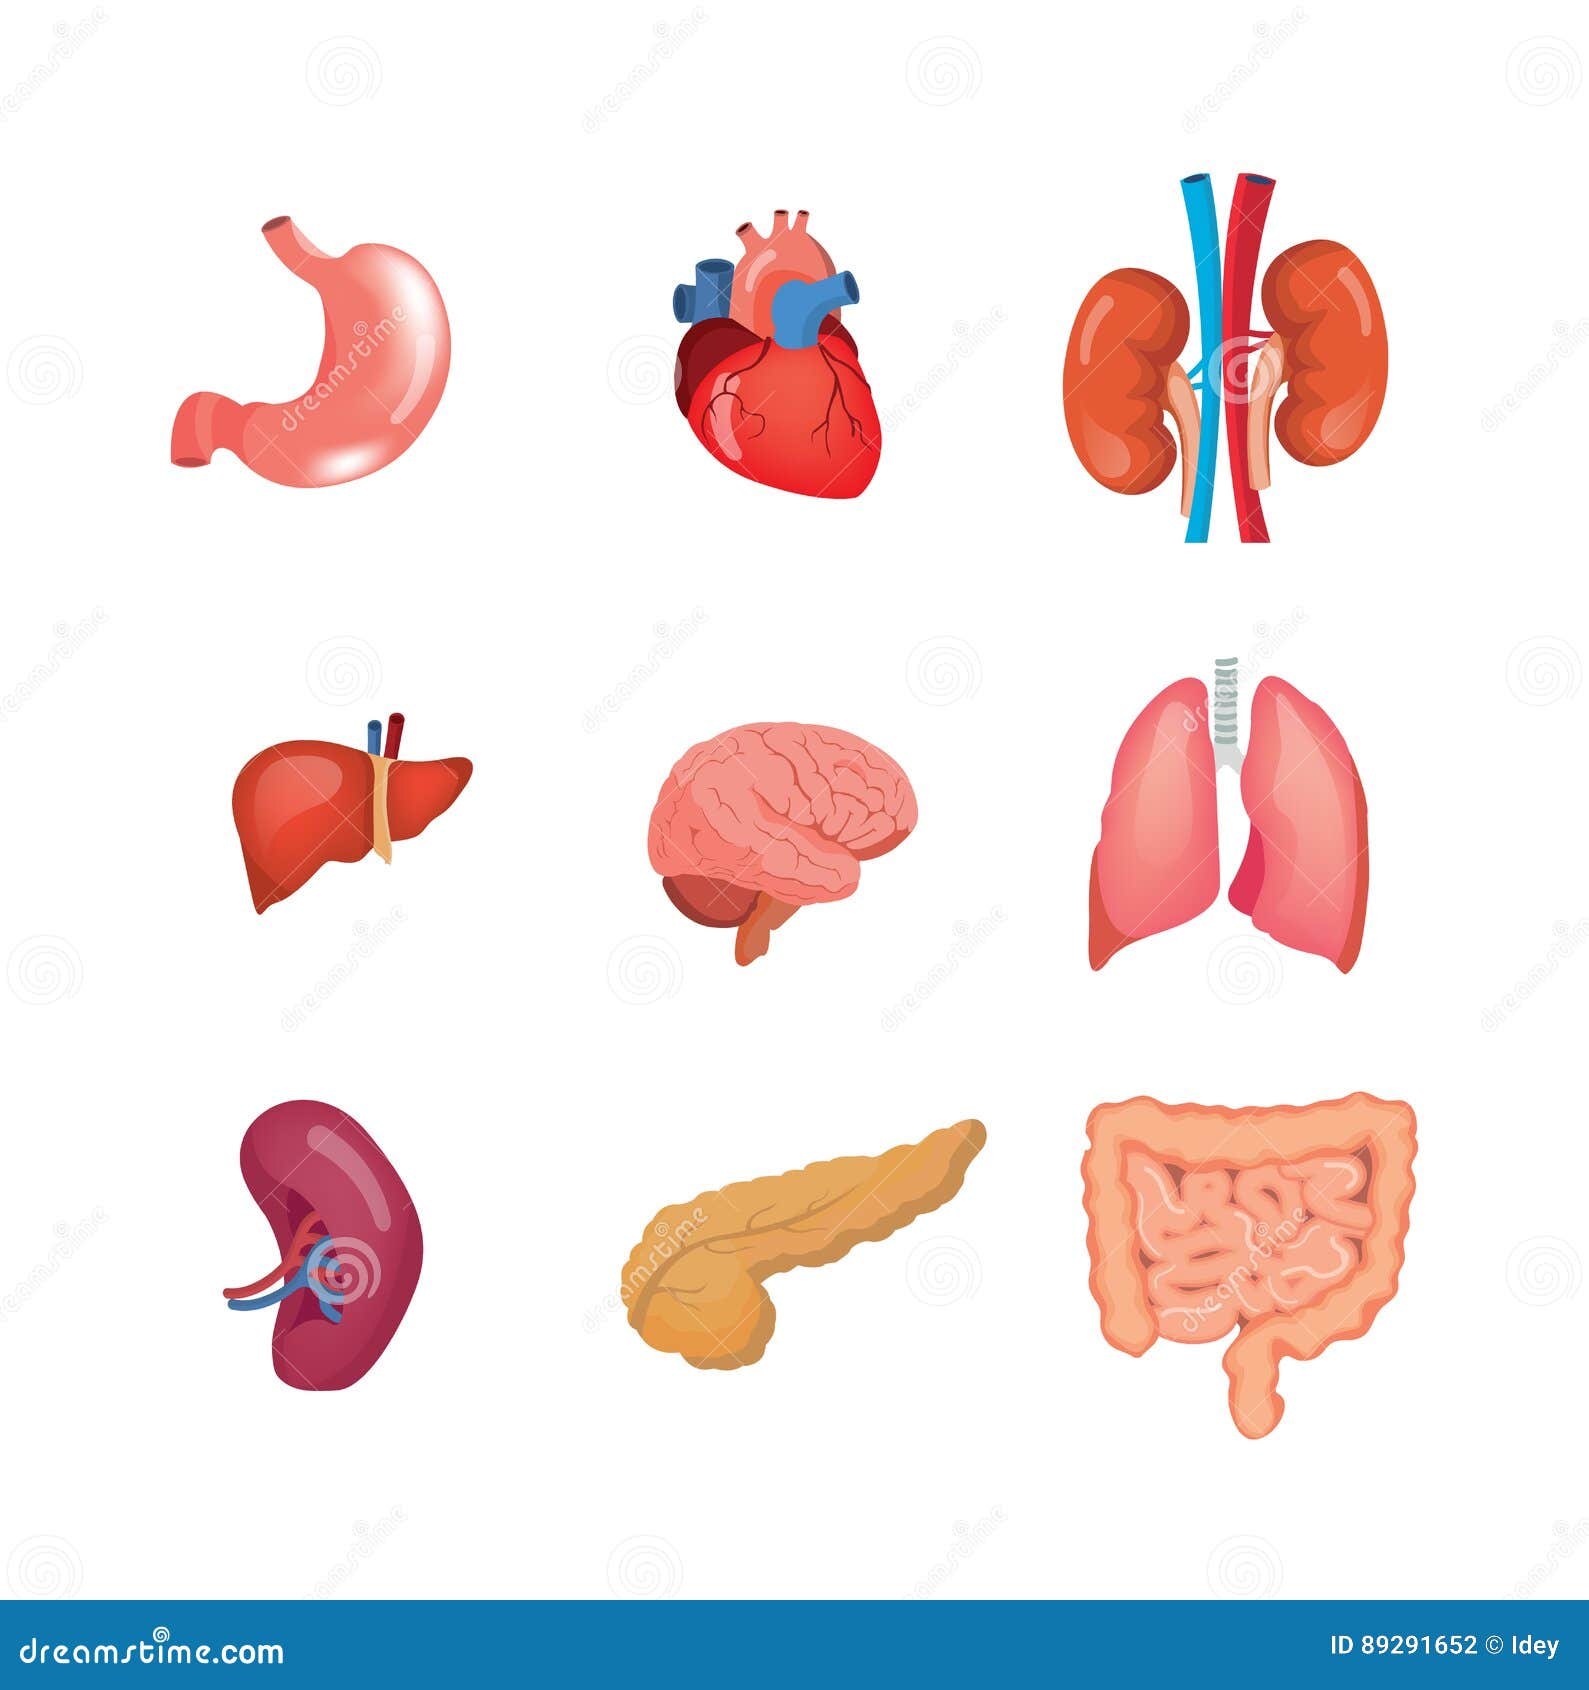 Сердце почка селезенка. Органы человека по отдельности. Внутренние органы для детей. Макет внутренних органов человека. Внутренние органы человека для детей.